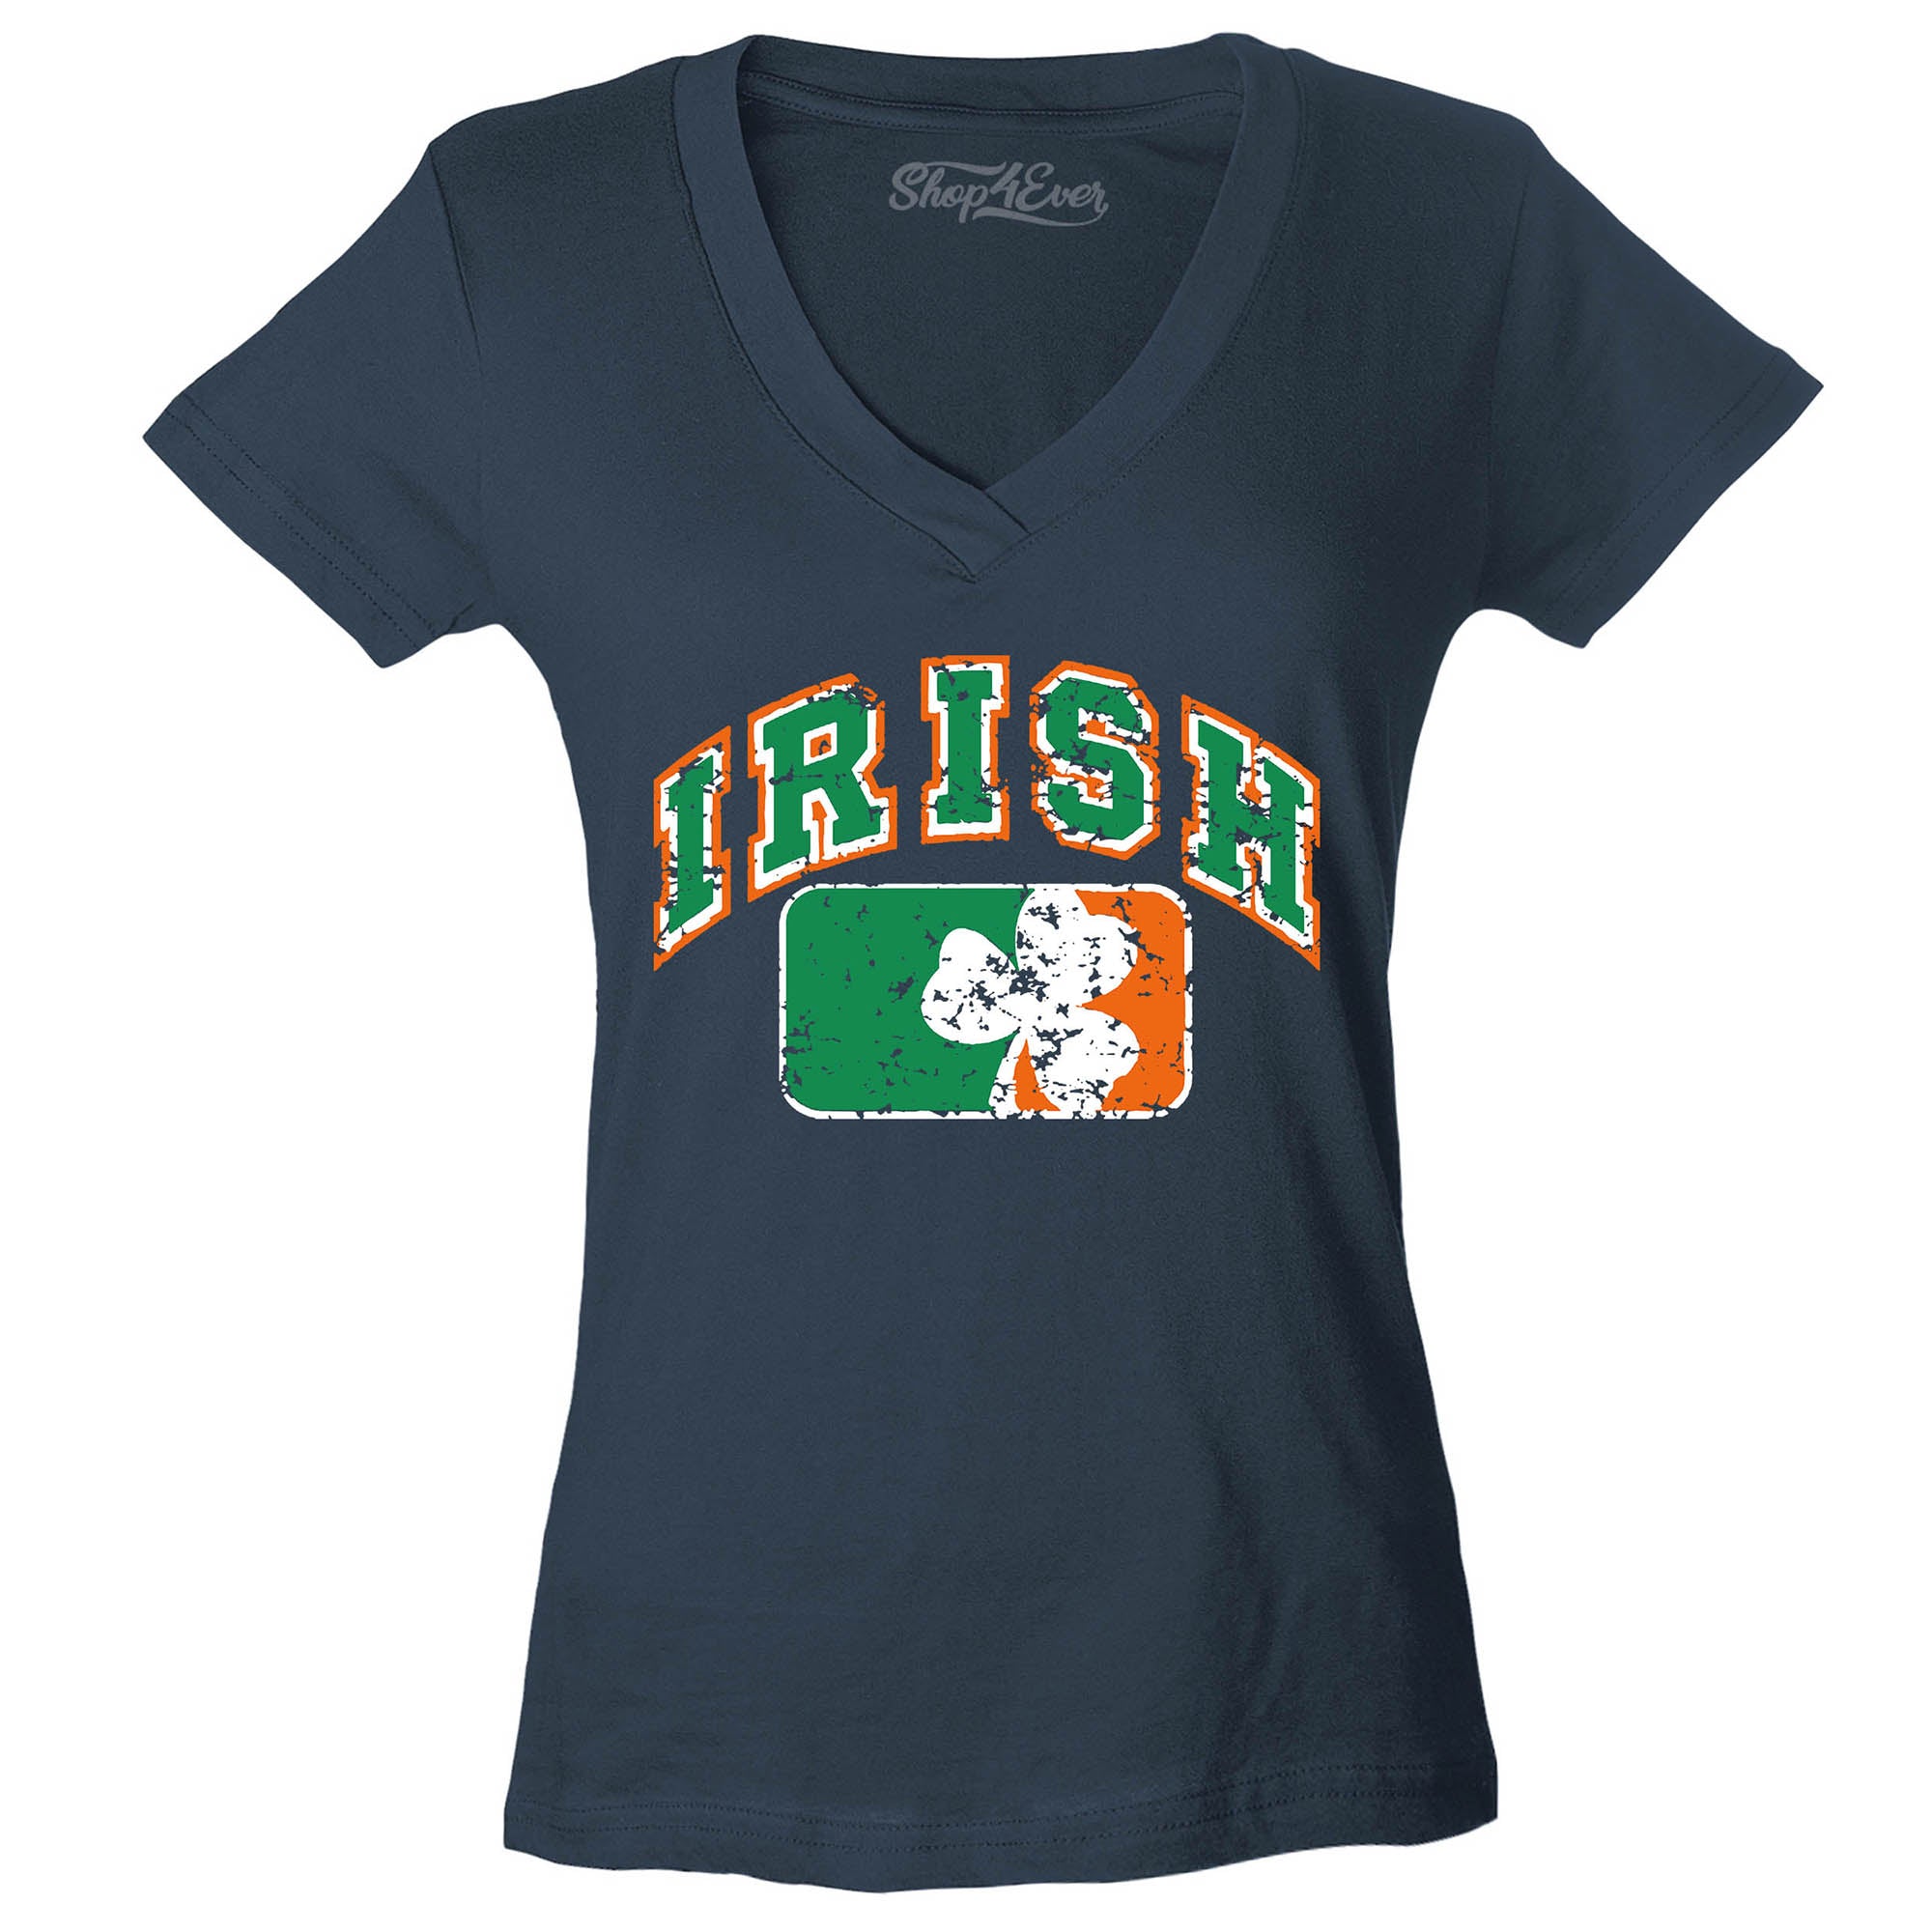 Vintage Irish Flag Shamrock Women's V-Neck T-Shirt St. Patrick's Day Shirts Slim FIT